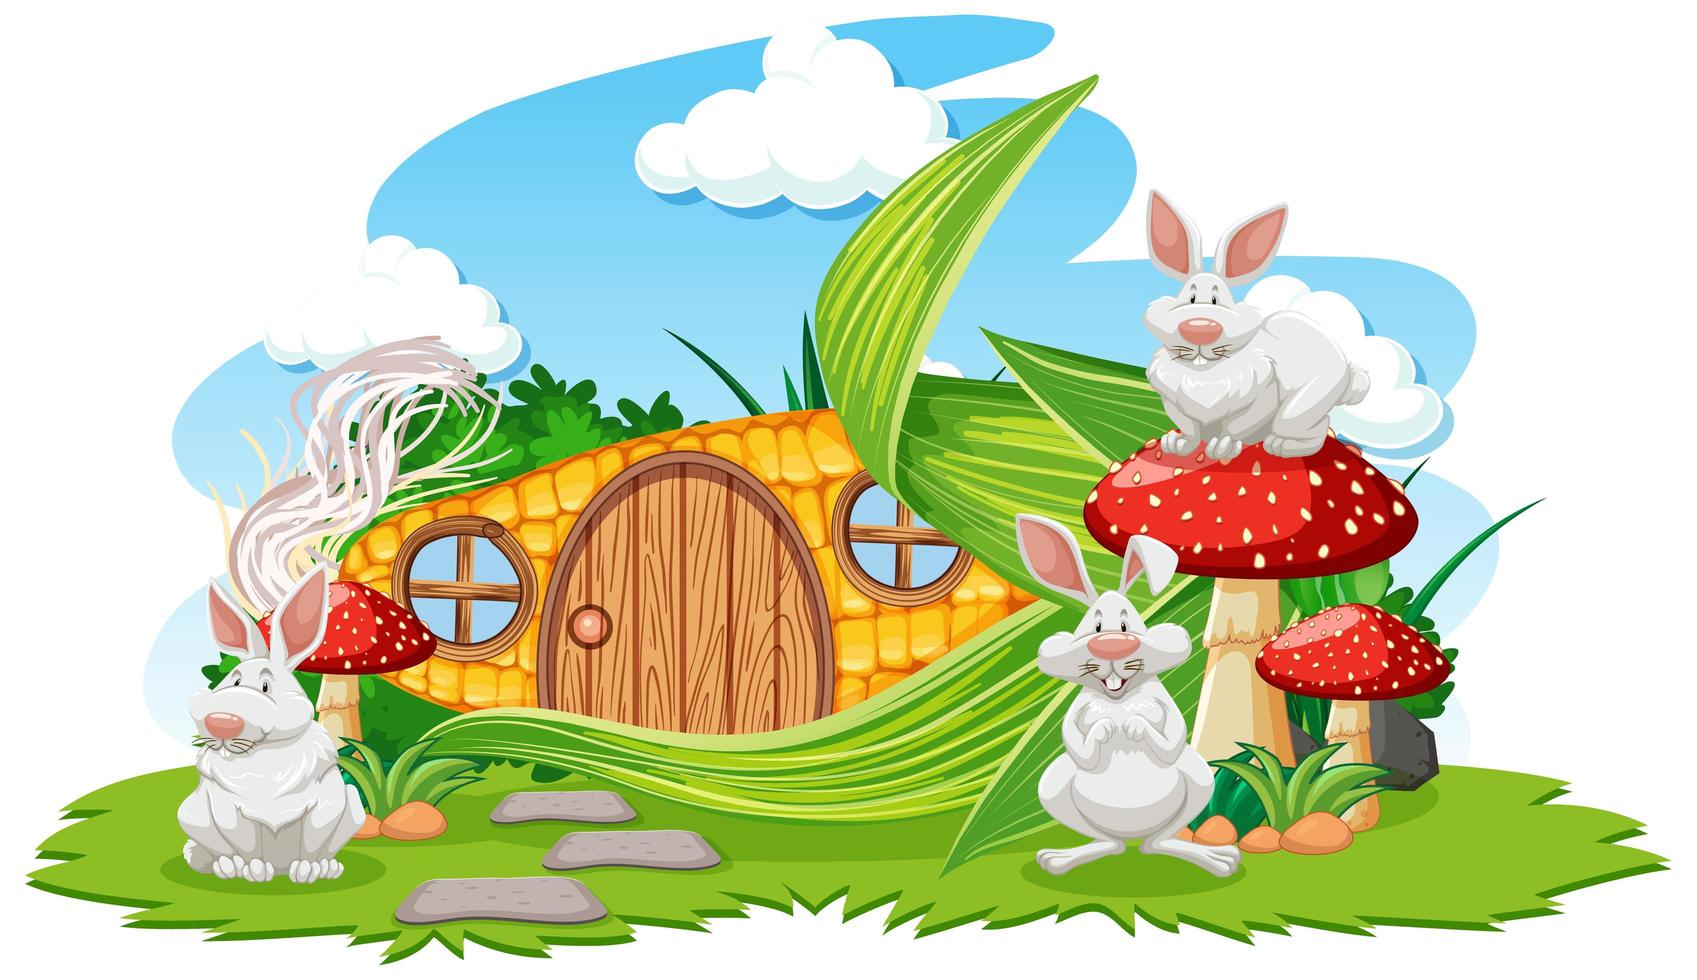 maïs huis met drie konijnen in cartoon-stijl vector